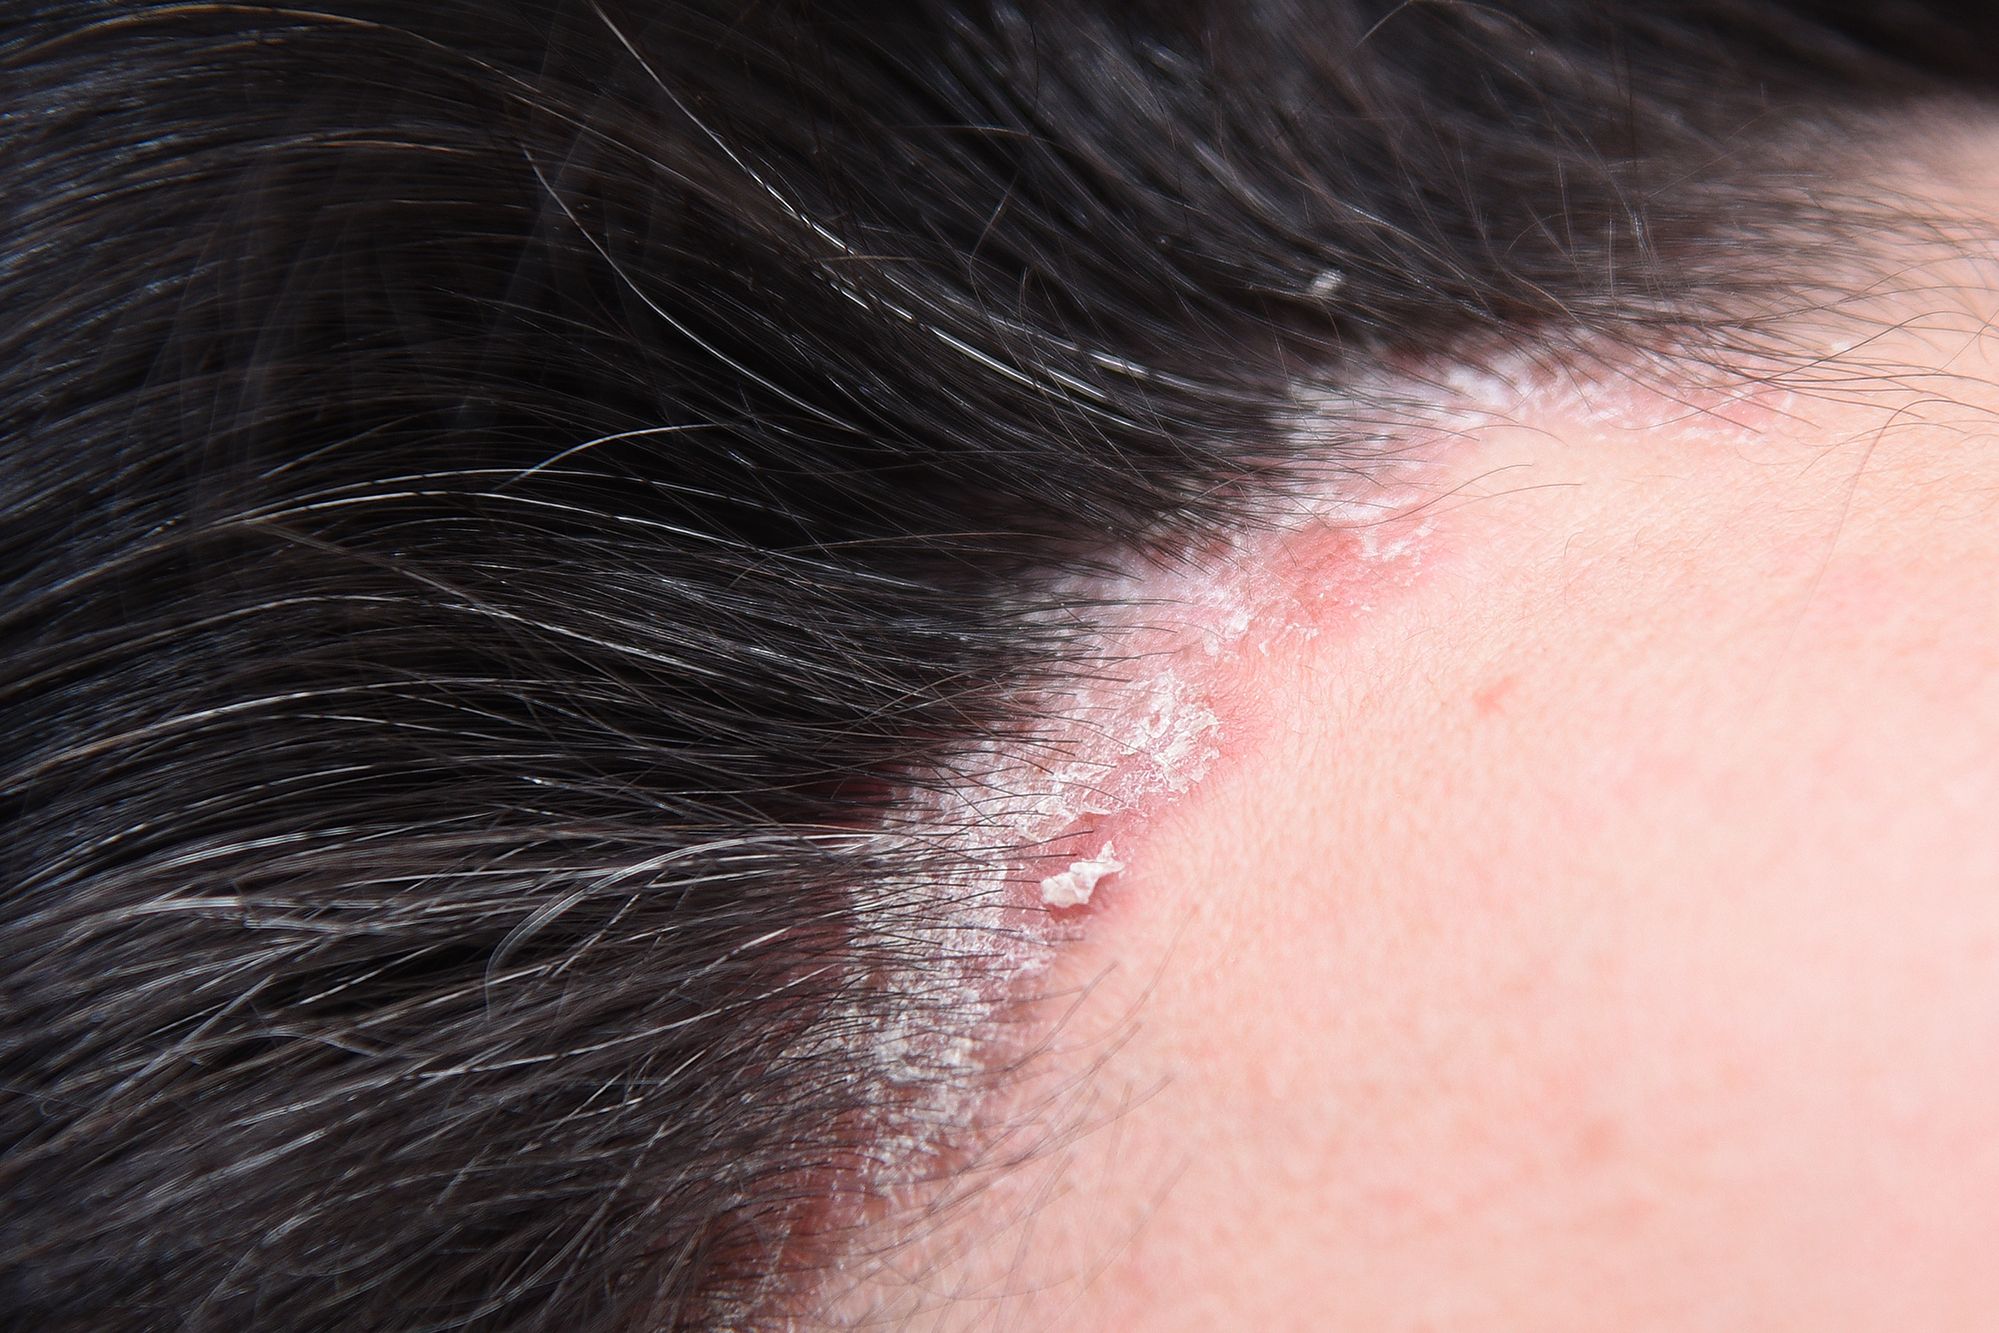 يفيد زيت الارغان في علاج حالات اكزيما الشعر